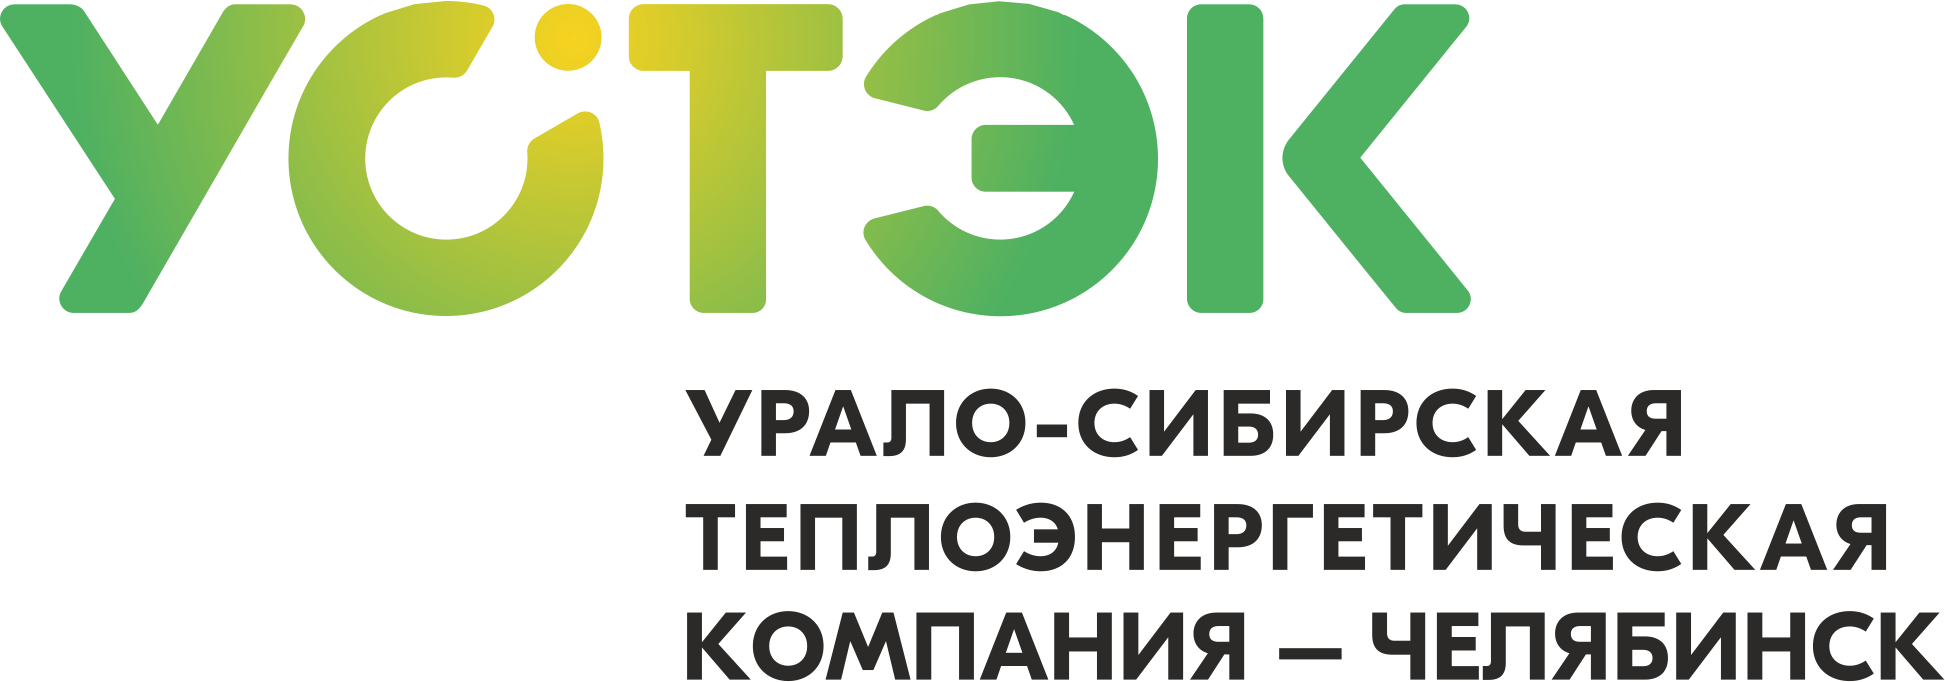 УСТЭК-Челябинск: отзывы от сотрудников и партнеров